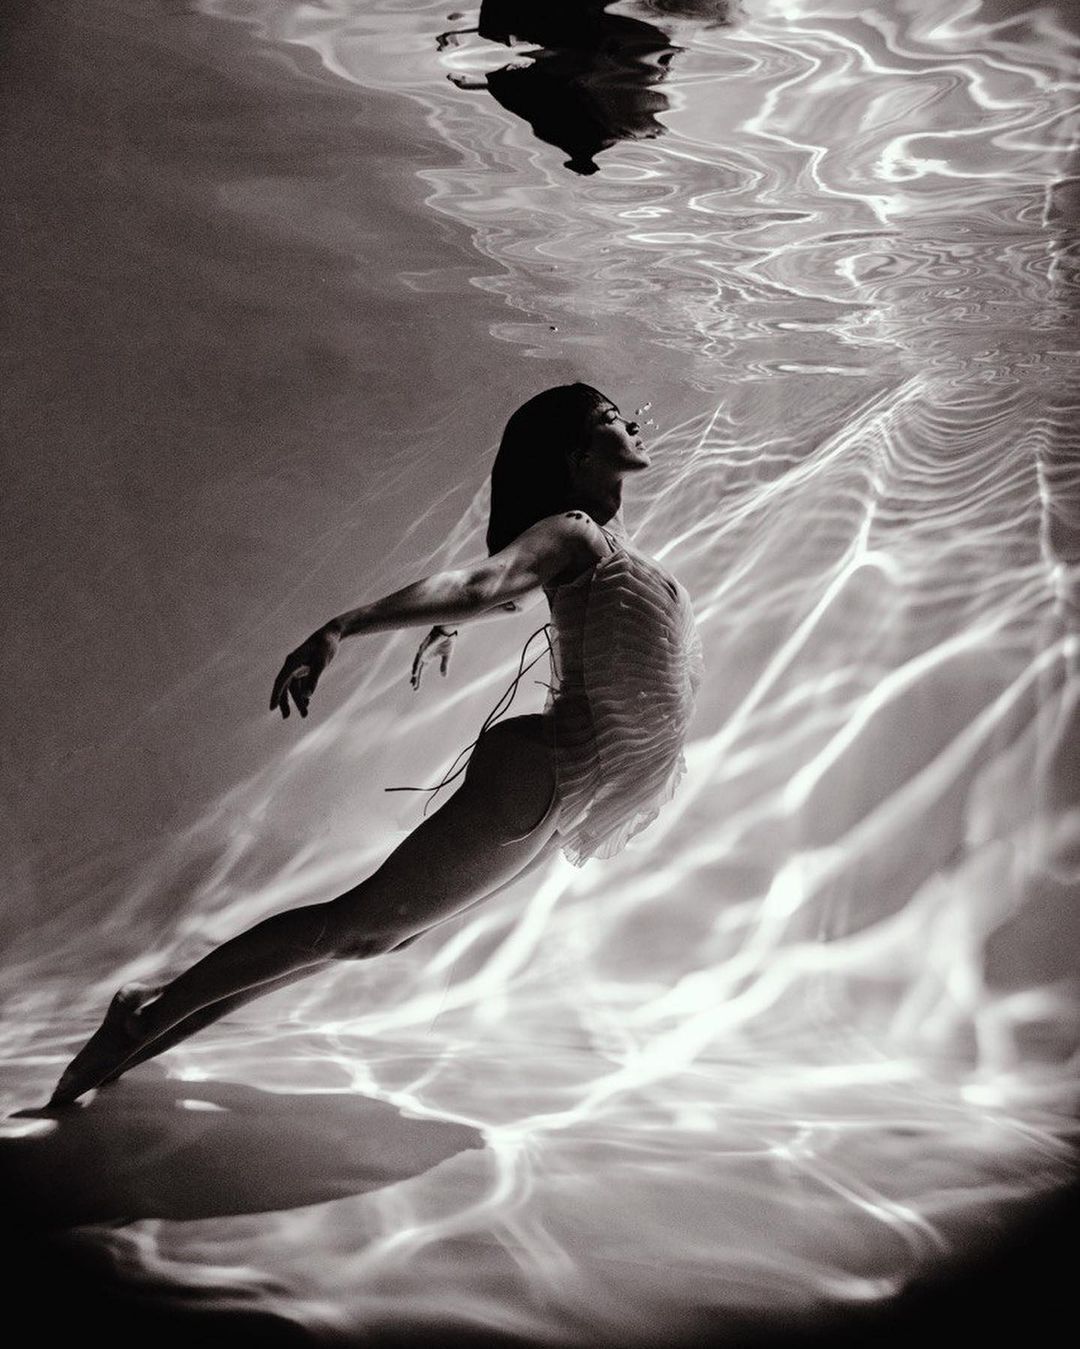 Даша Астаф'єва знялася в сексуальній фотосесії під водою.